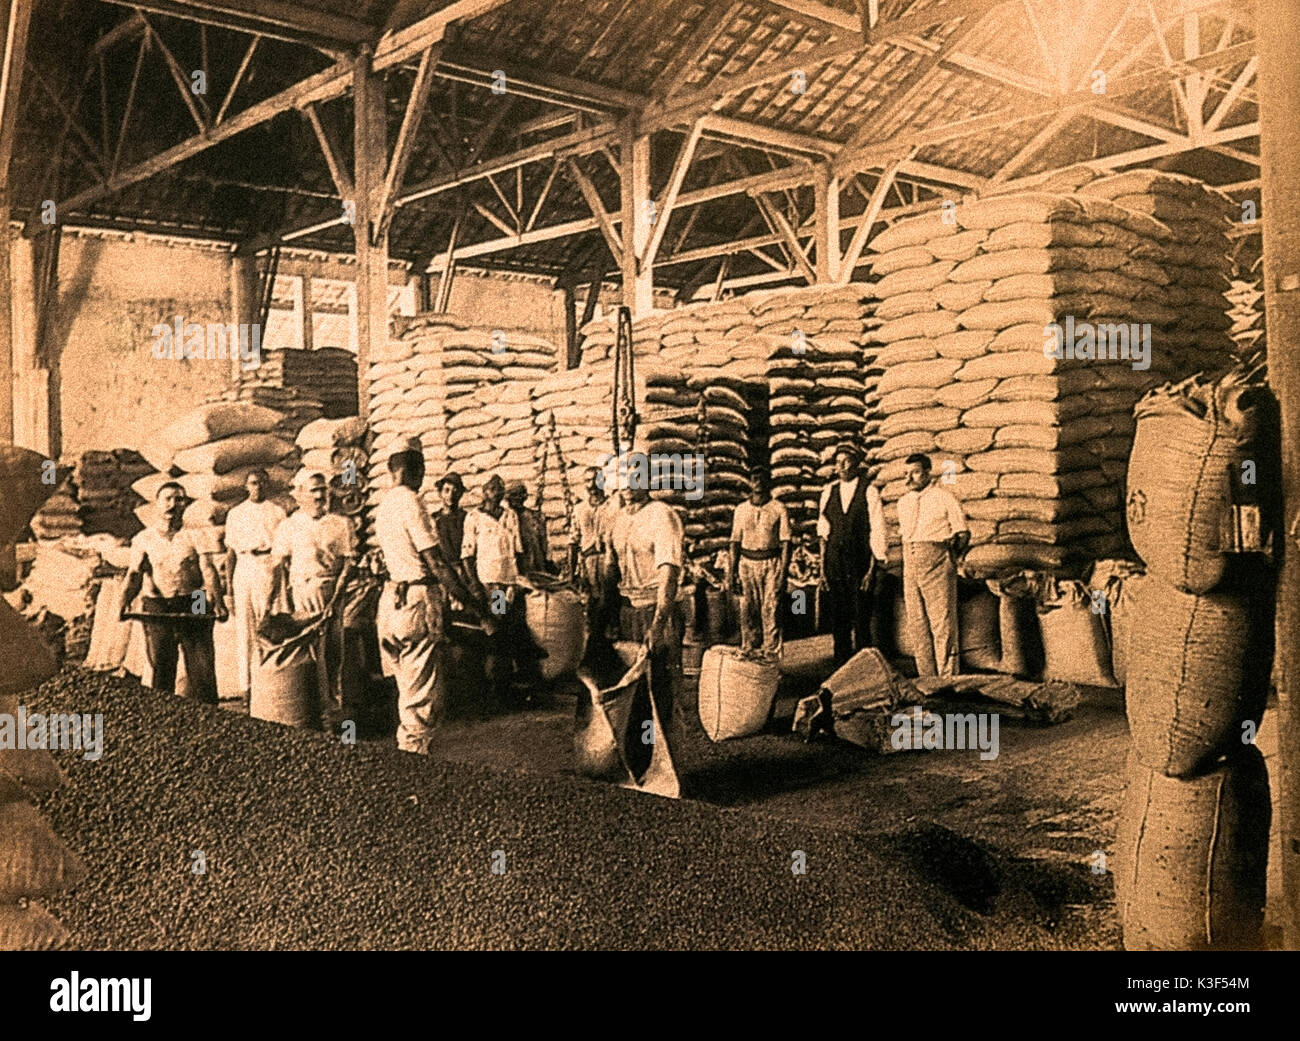 Brasil La inmigración italiana a principios de 1900 - almacén de café Foto de stock